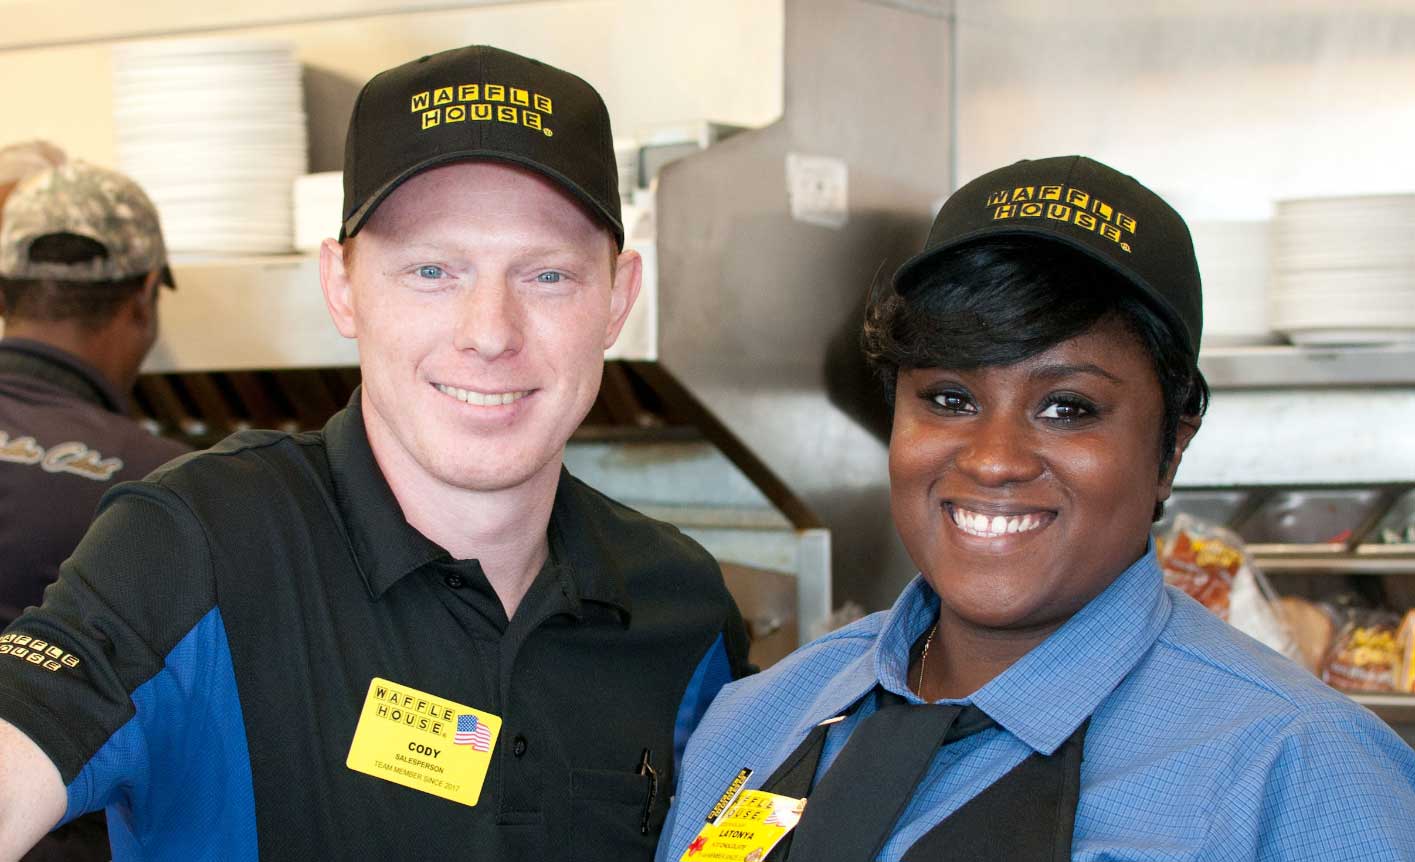 Waffle House Dress Code